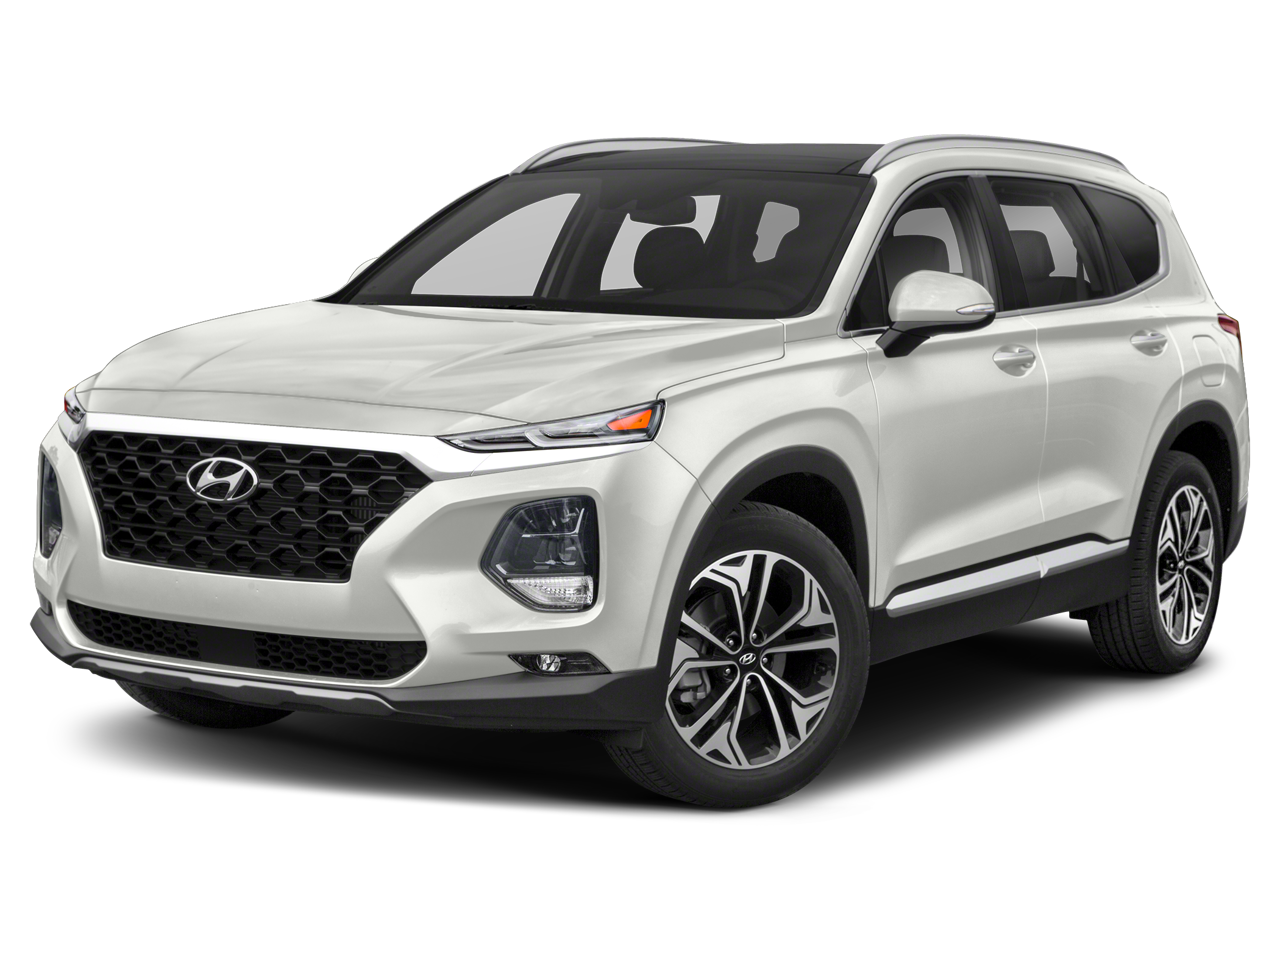 2019 Hyundai Santa Fe Limited 2.0T